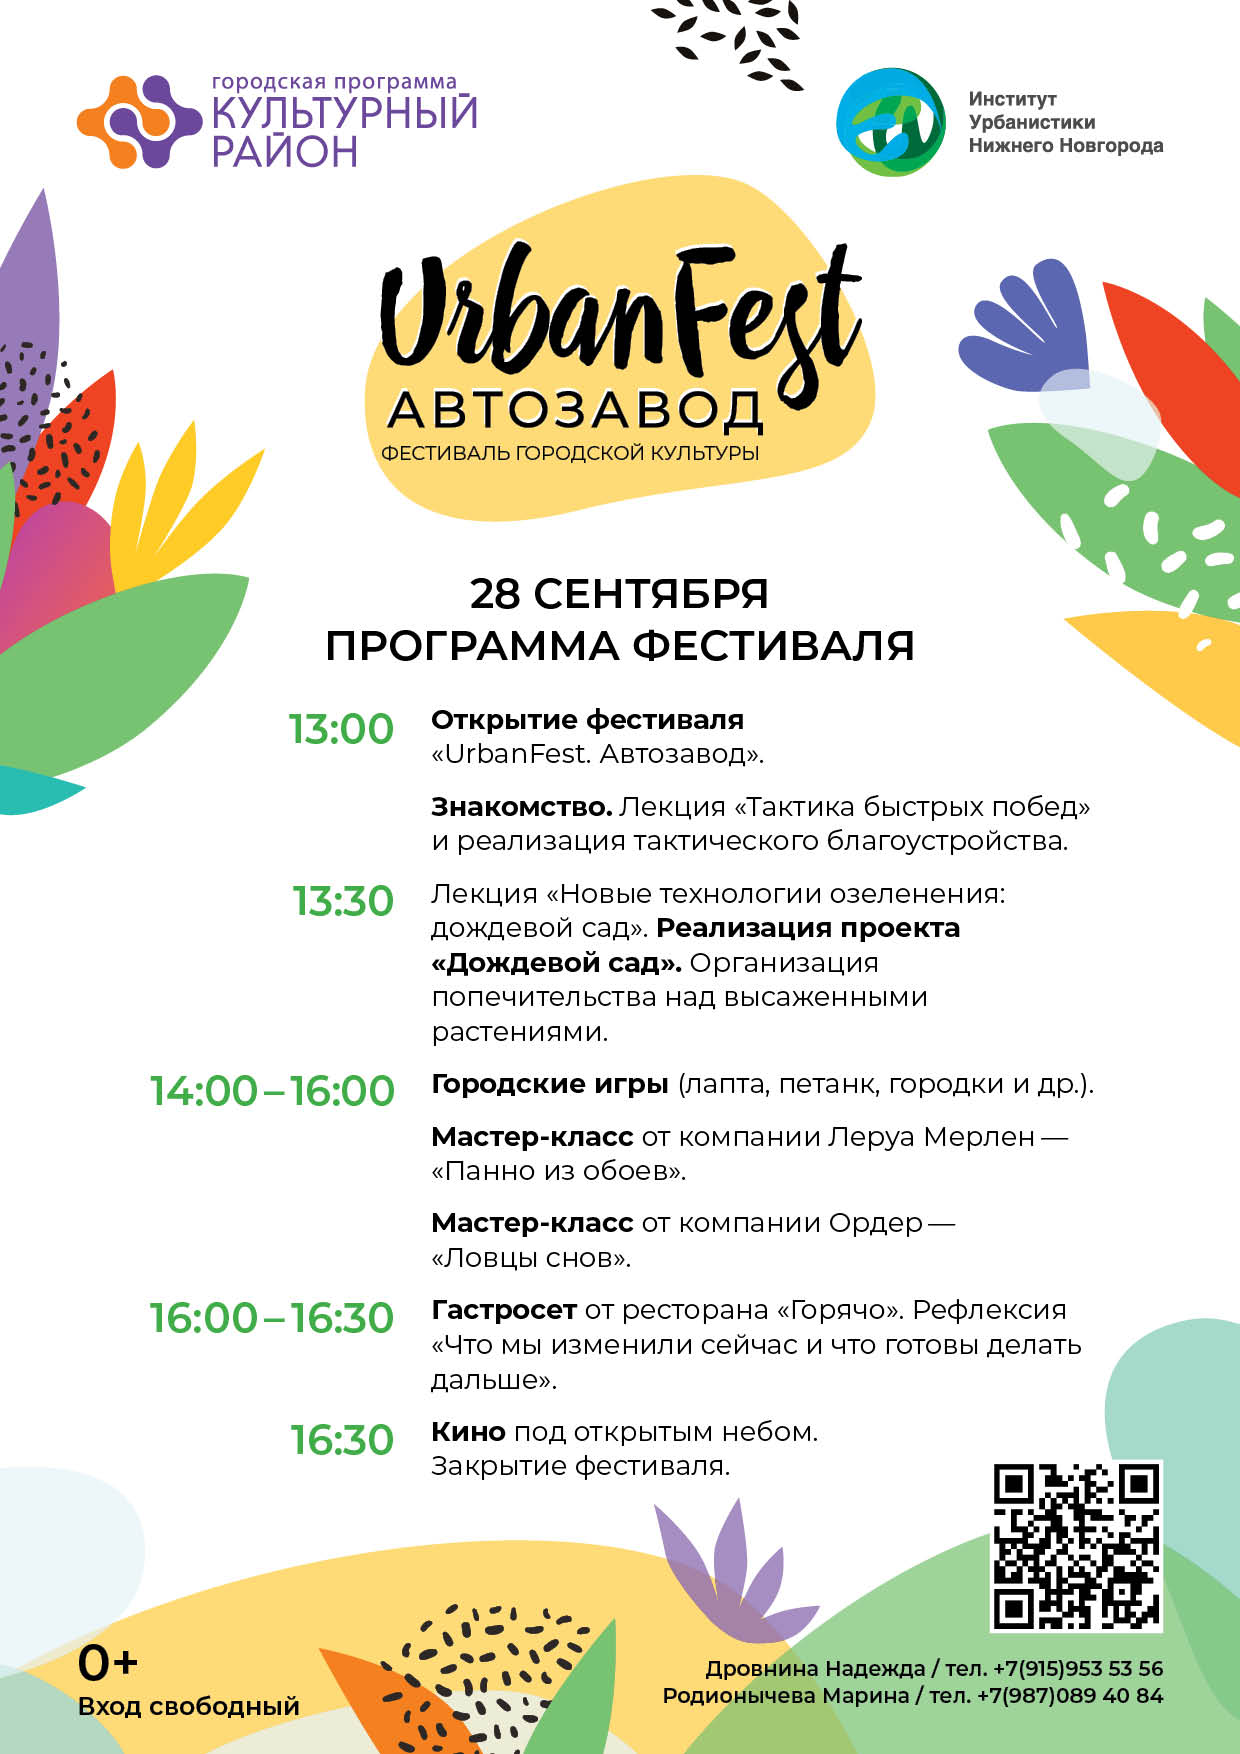 Дождевой сад появится в рамках фестиваля URBANFEST.АВТОЗАВОД в Нижнем Новгороде - фото 2